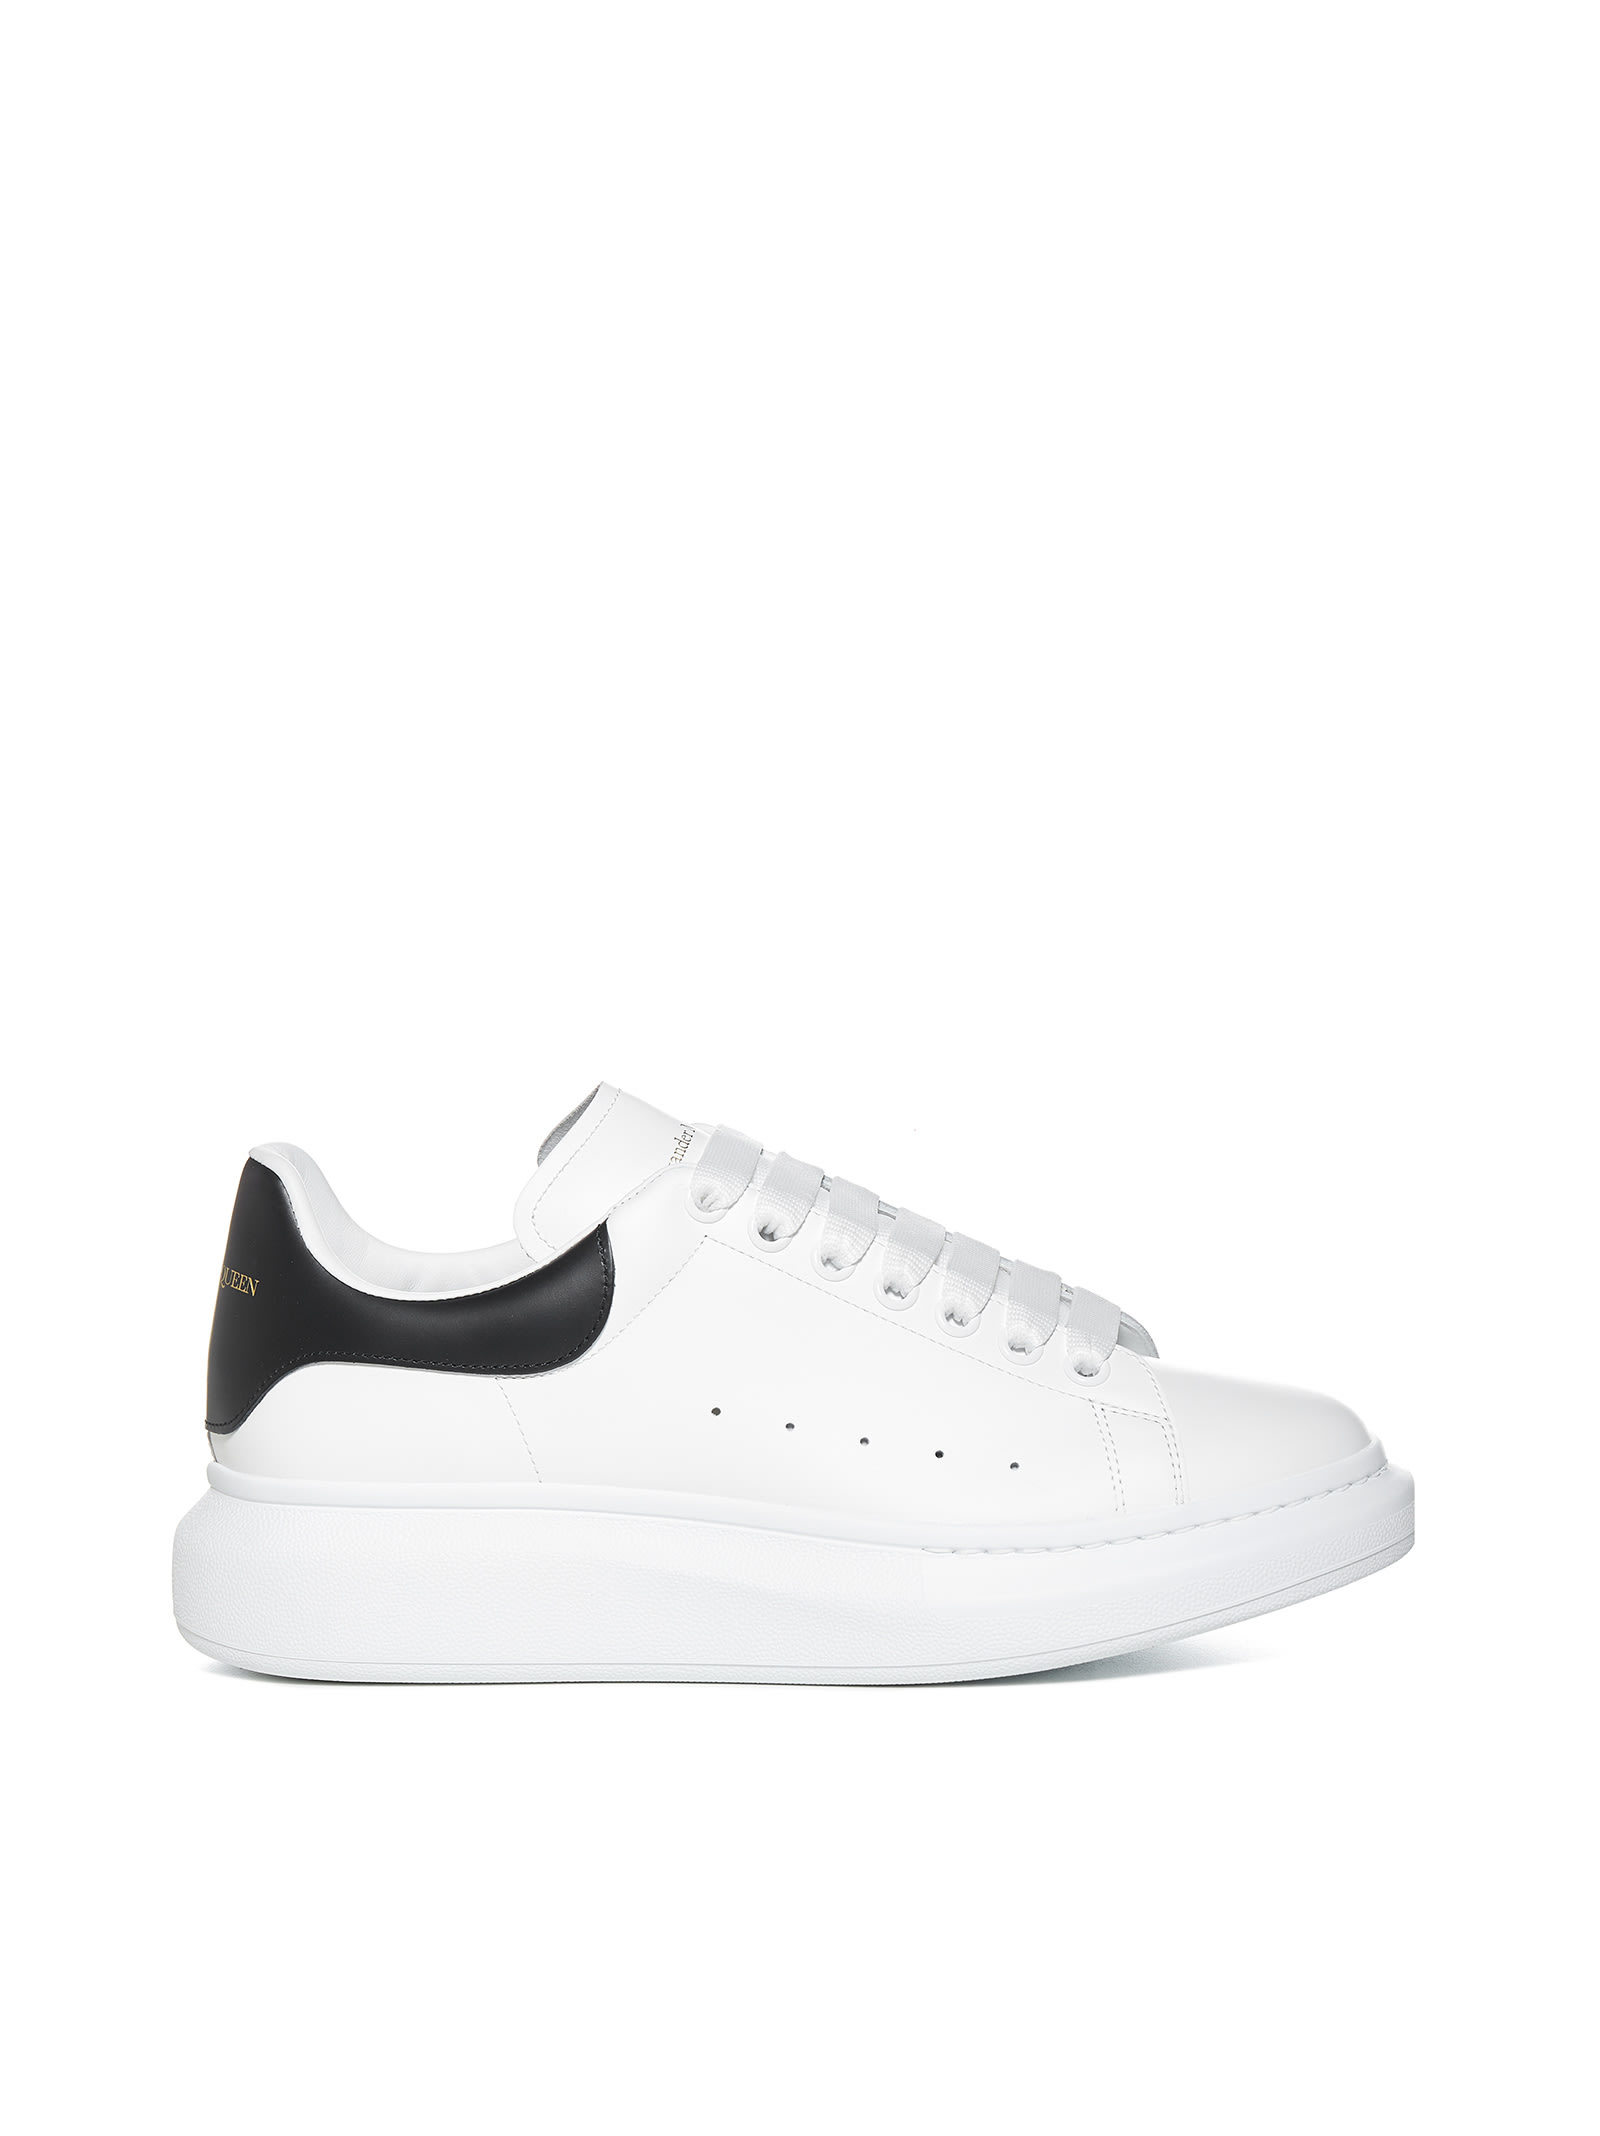 Shop Alexander Mcqueen Sneakers In White/black